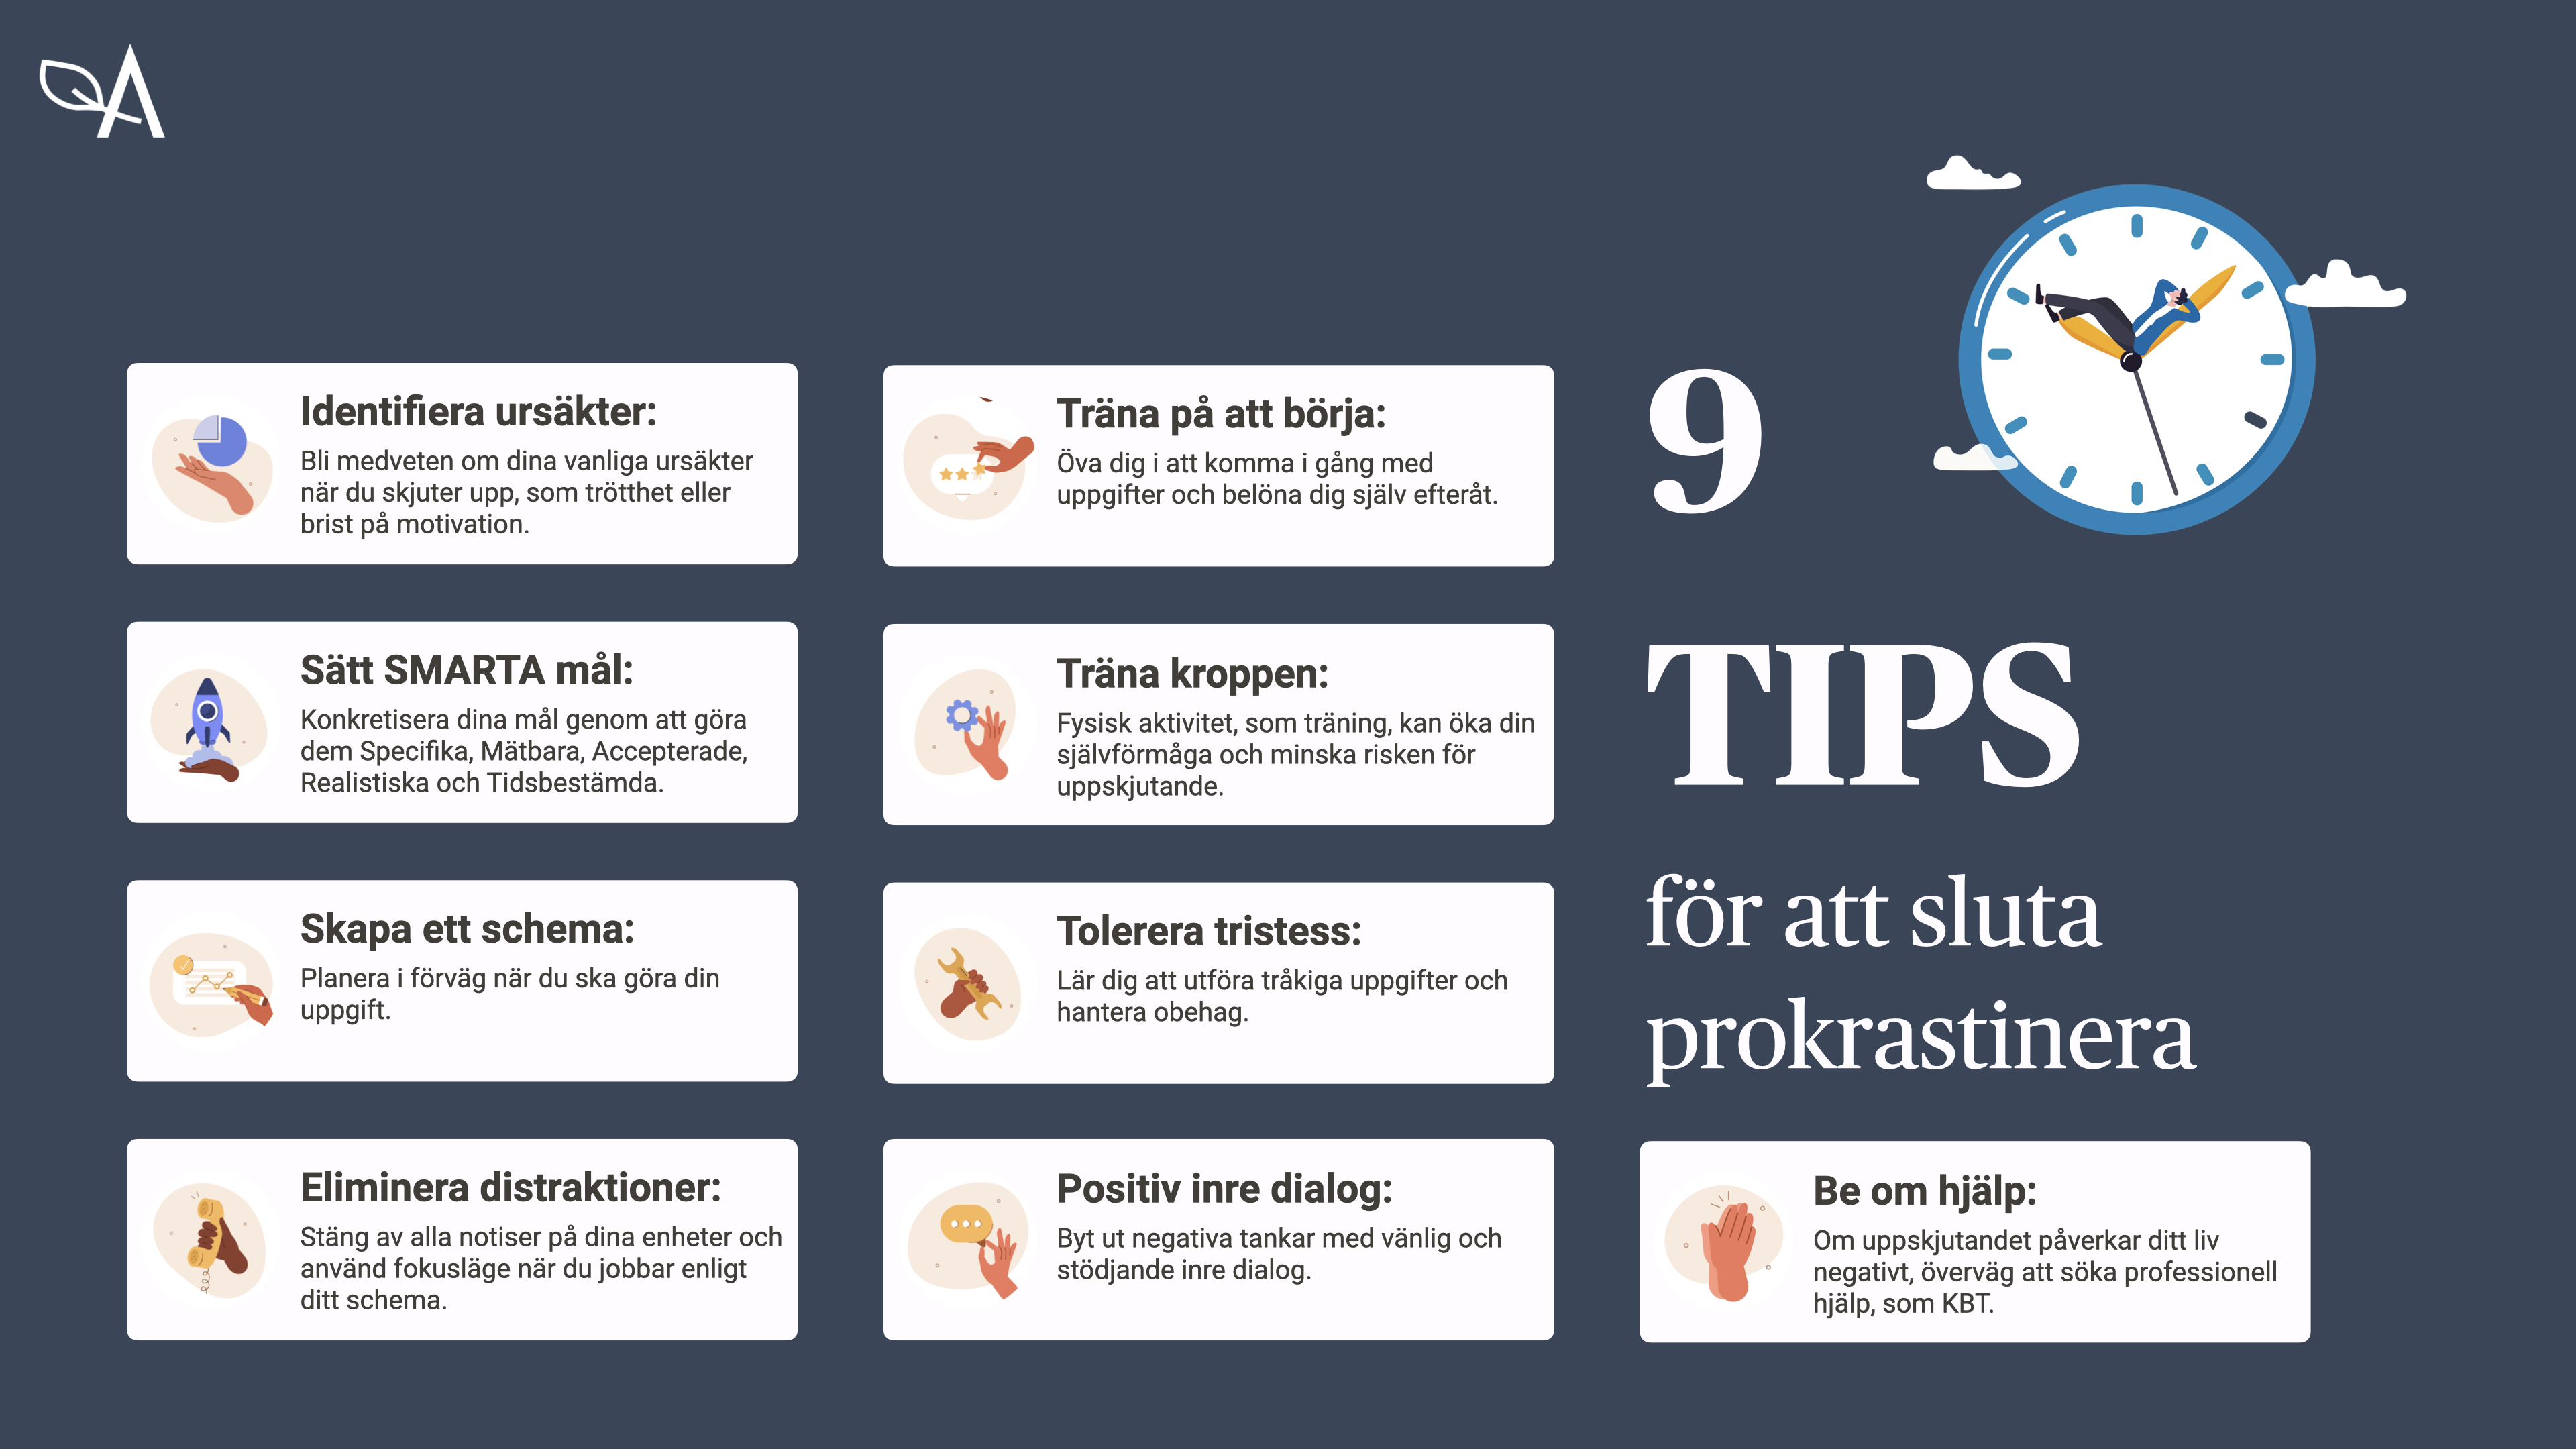 Bilden beskriver 9 tips för att sluta prokrastinera. Bland annat att göra ett schema, identifiera vanliga ursäkter och att träna på att börja. Alla tipsen finns i löptext längre ner på denna sida.